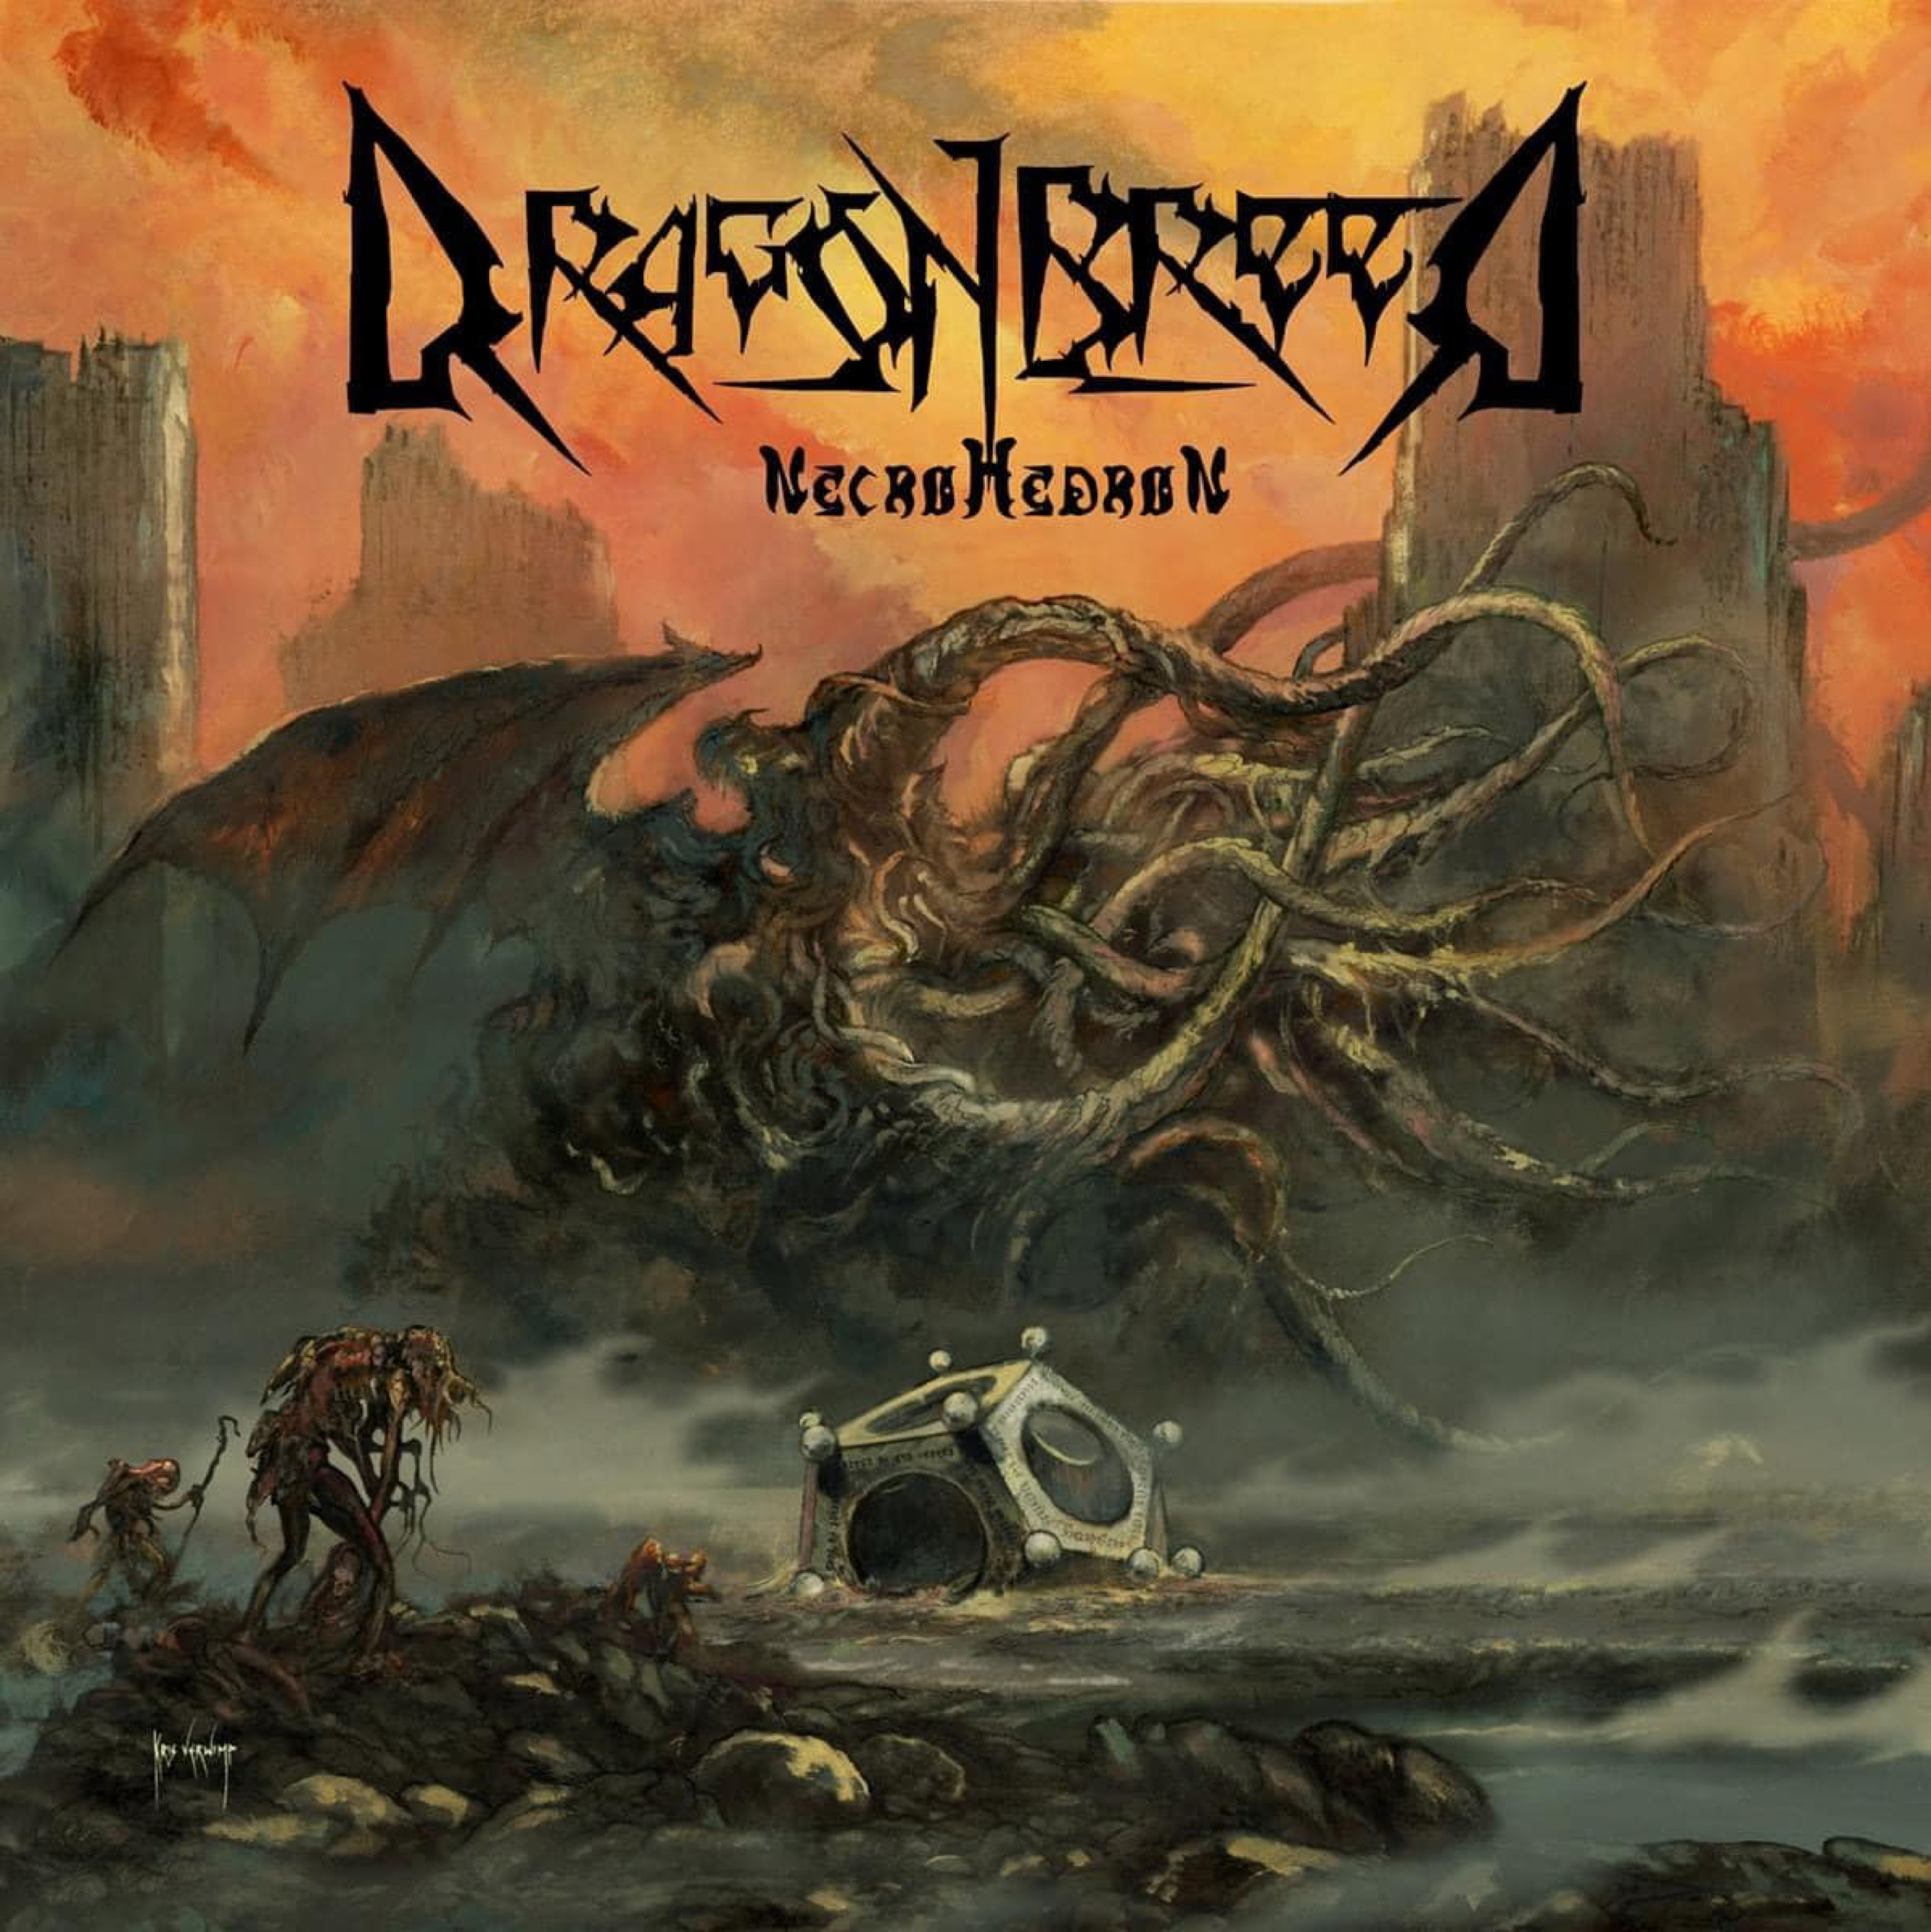 Das Artwork zum Debütalbum: „Necrohedron” von Dragonbreed erscheint im April 2022.